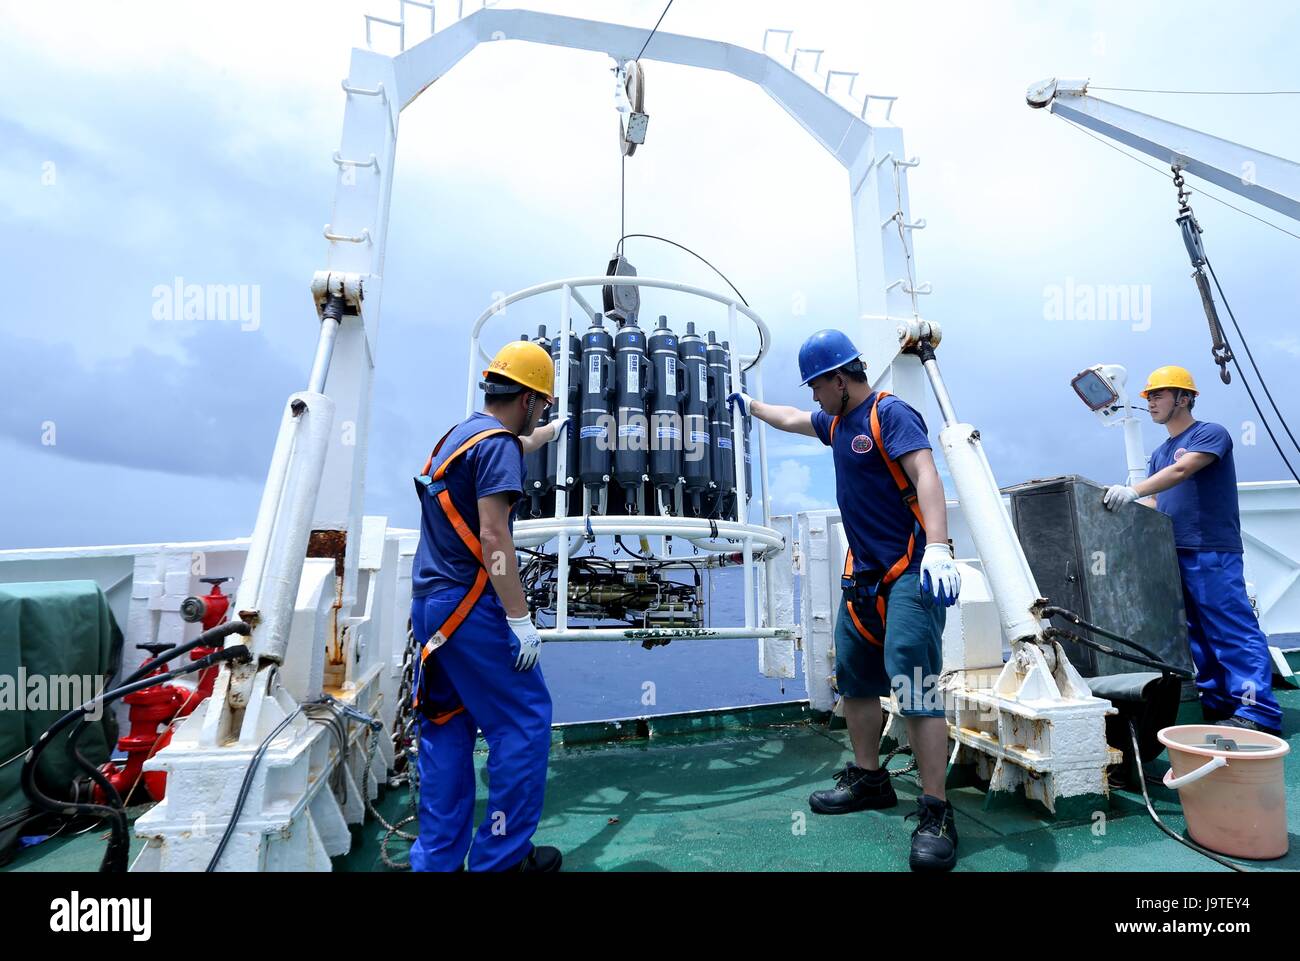 (170603) -- À BORD D'UN NAVIRE XIANGYANGHONG 09, Juin 3, 2017 (Xinhua) -- les membres de l'équipe de recherche scientifique de l'eau de l'océan d'essai avec un appareil à bord de CTD Xiangyanghong 09, le vaisseau mère de la 'submersible habité Jiaolong', le 3 juin 2017. Jiaolong envisage d'effectuer cinq plongées dans la tranchée de Yap à partir de Juin 4. (Xinhua/Liu Hotel particulier) (wyl) Banque D'Images